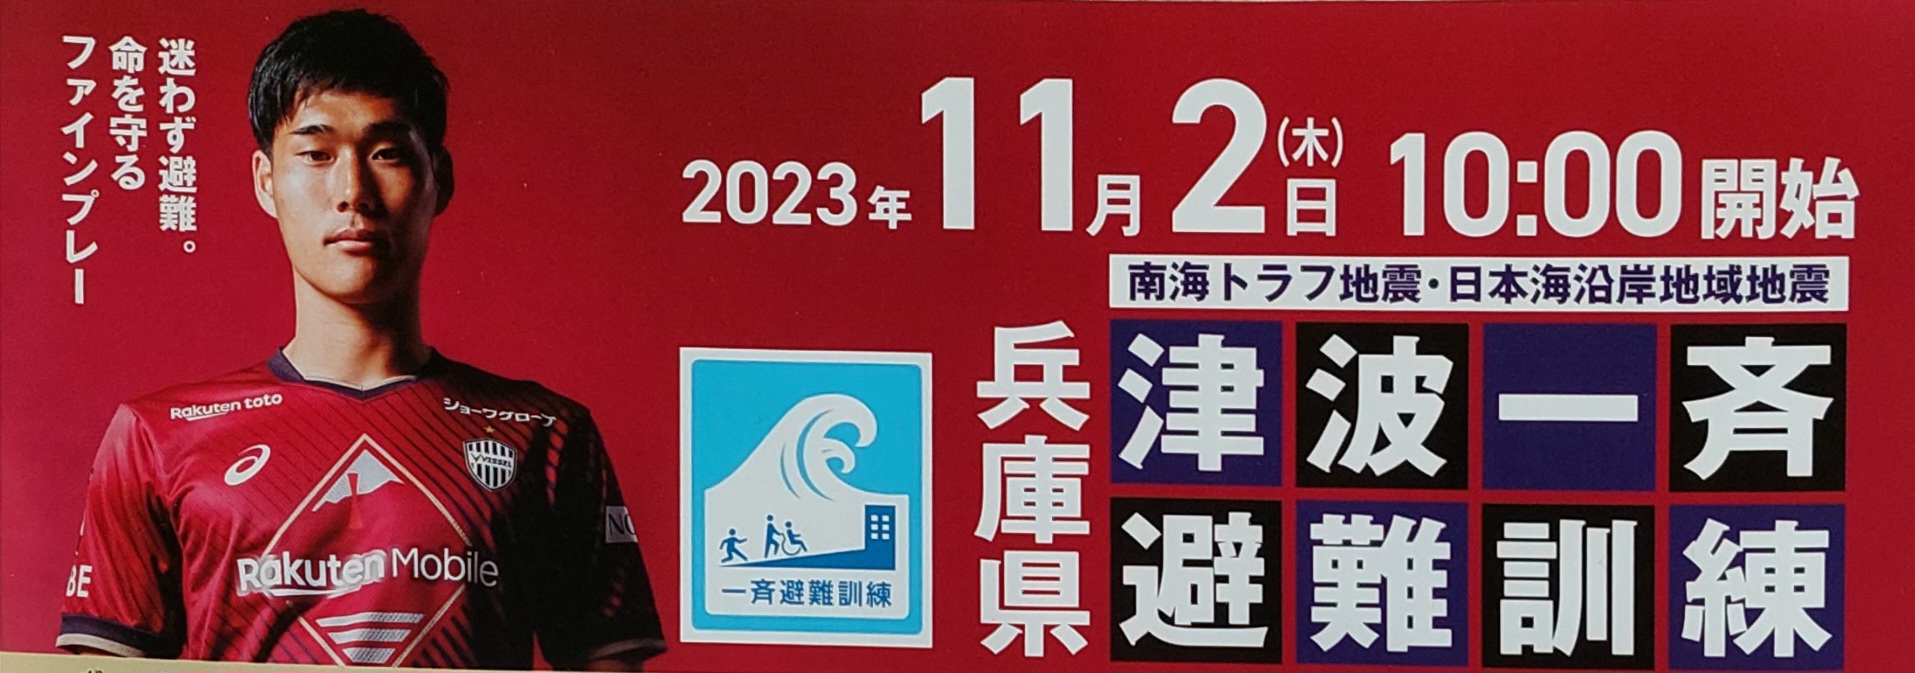 宝塚SAで、兵庫県の「津波一斉避難訓練」チラシ